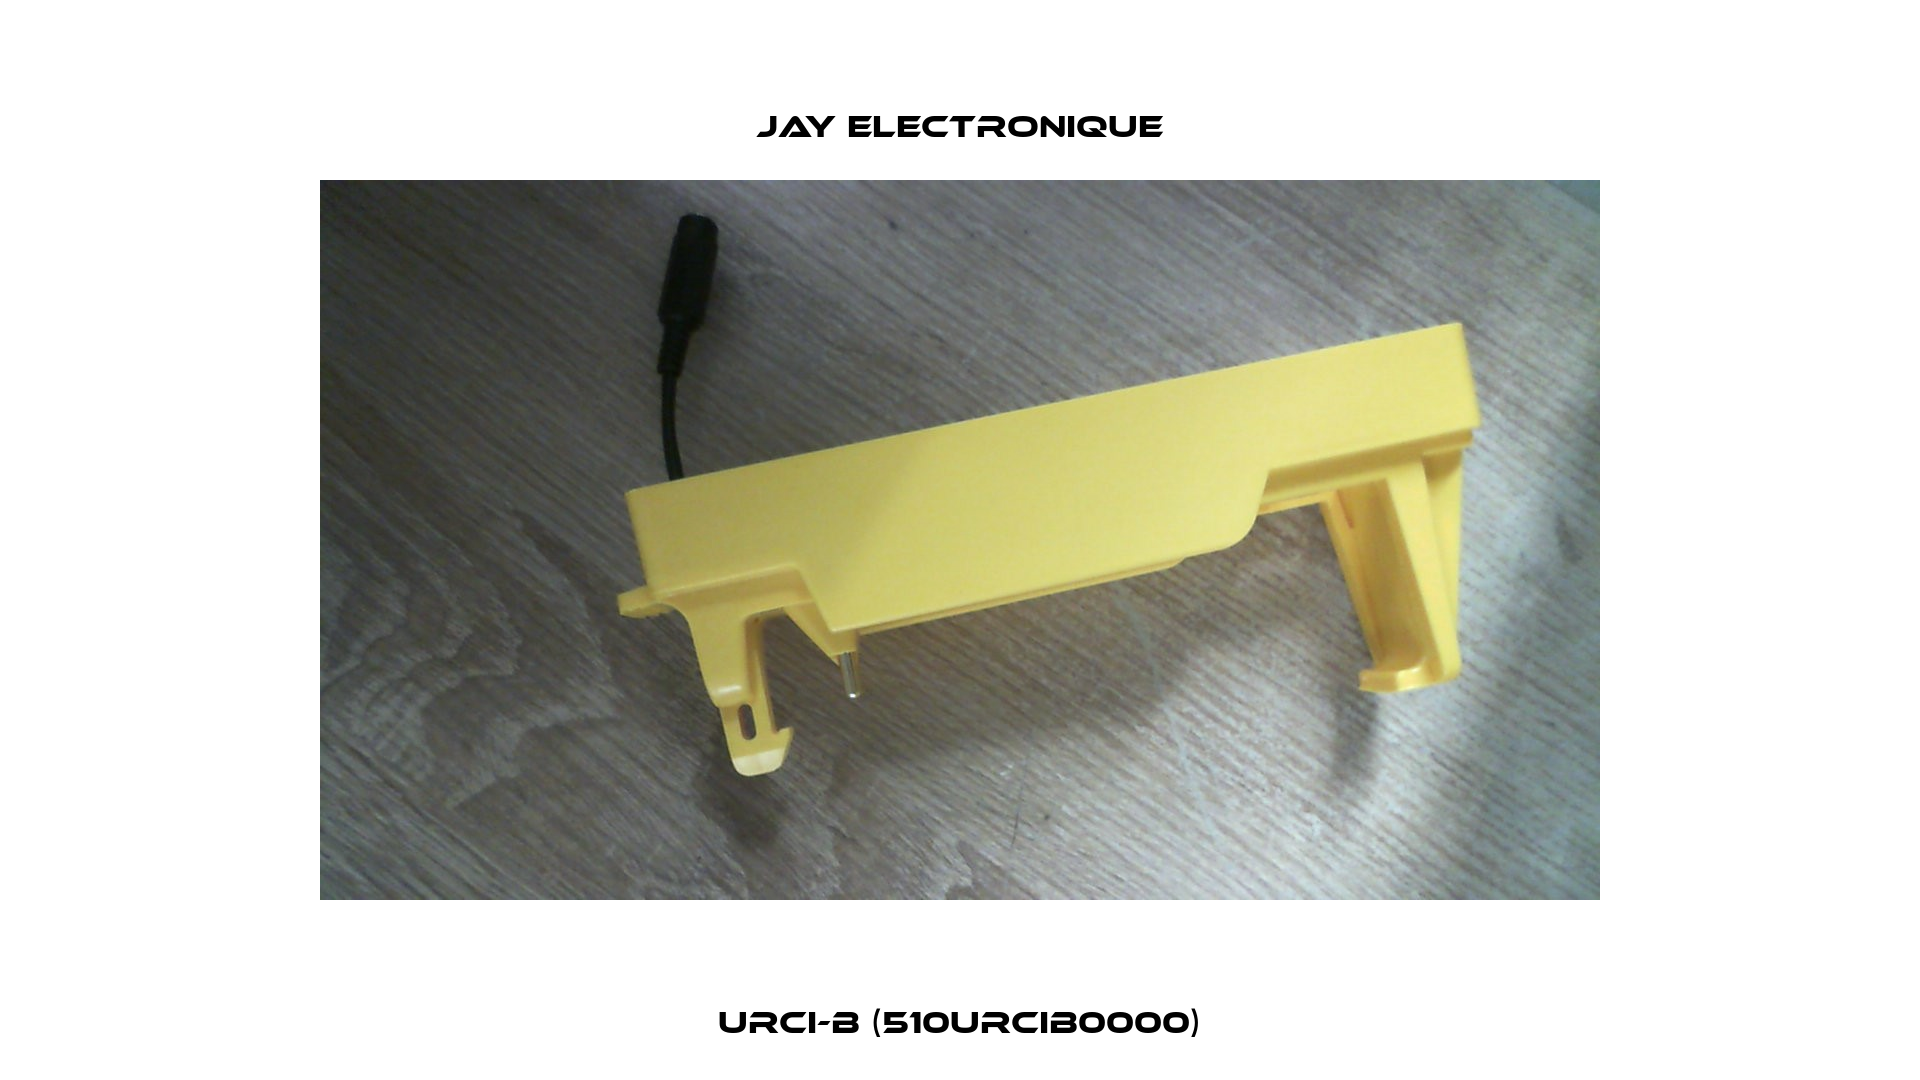 URCI-B (510URCIB0000) JAY Electronique